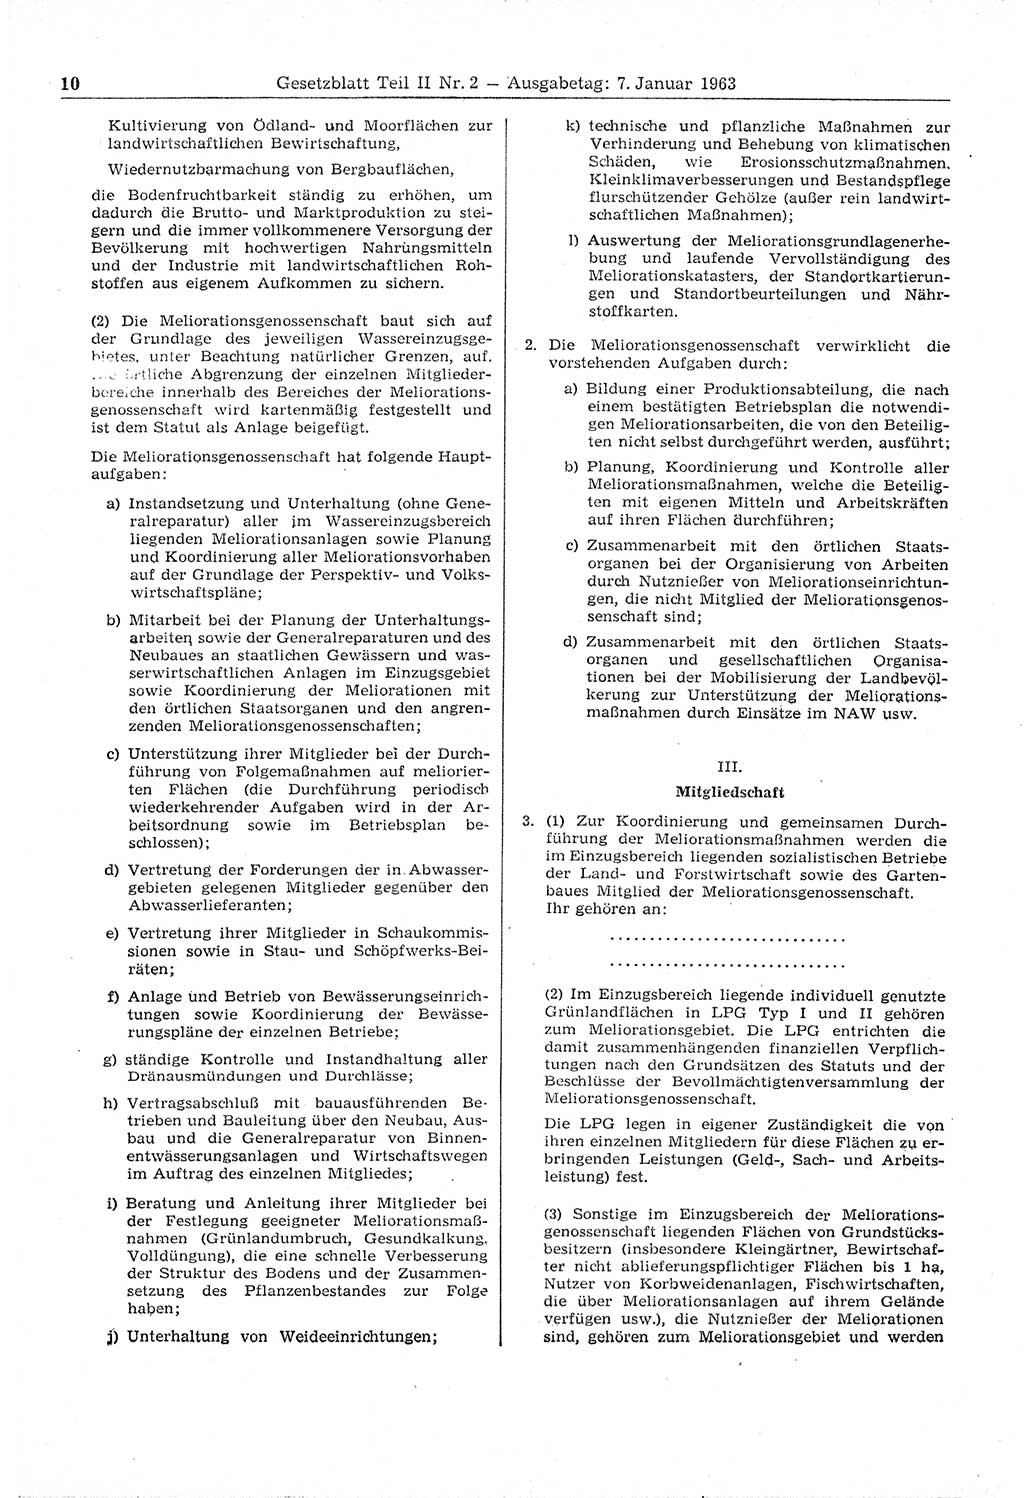 Gesetzblatt (GBl.) der Deutschen Demokratischen Republik (DDR) Teil ⅠⅠ 1963, Seite 10 (GBl. DDR ⅠⅠ 1963, S. 10)